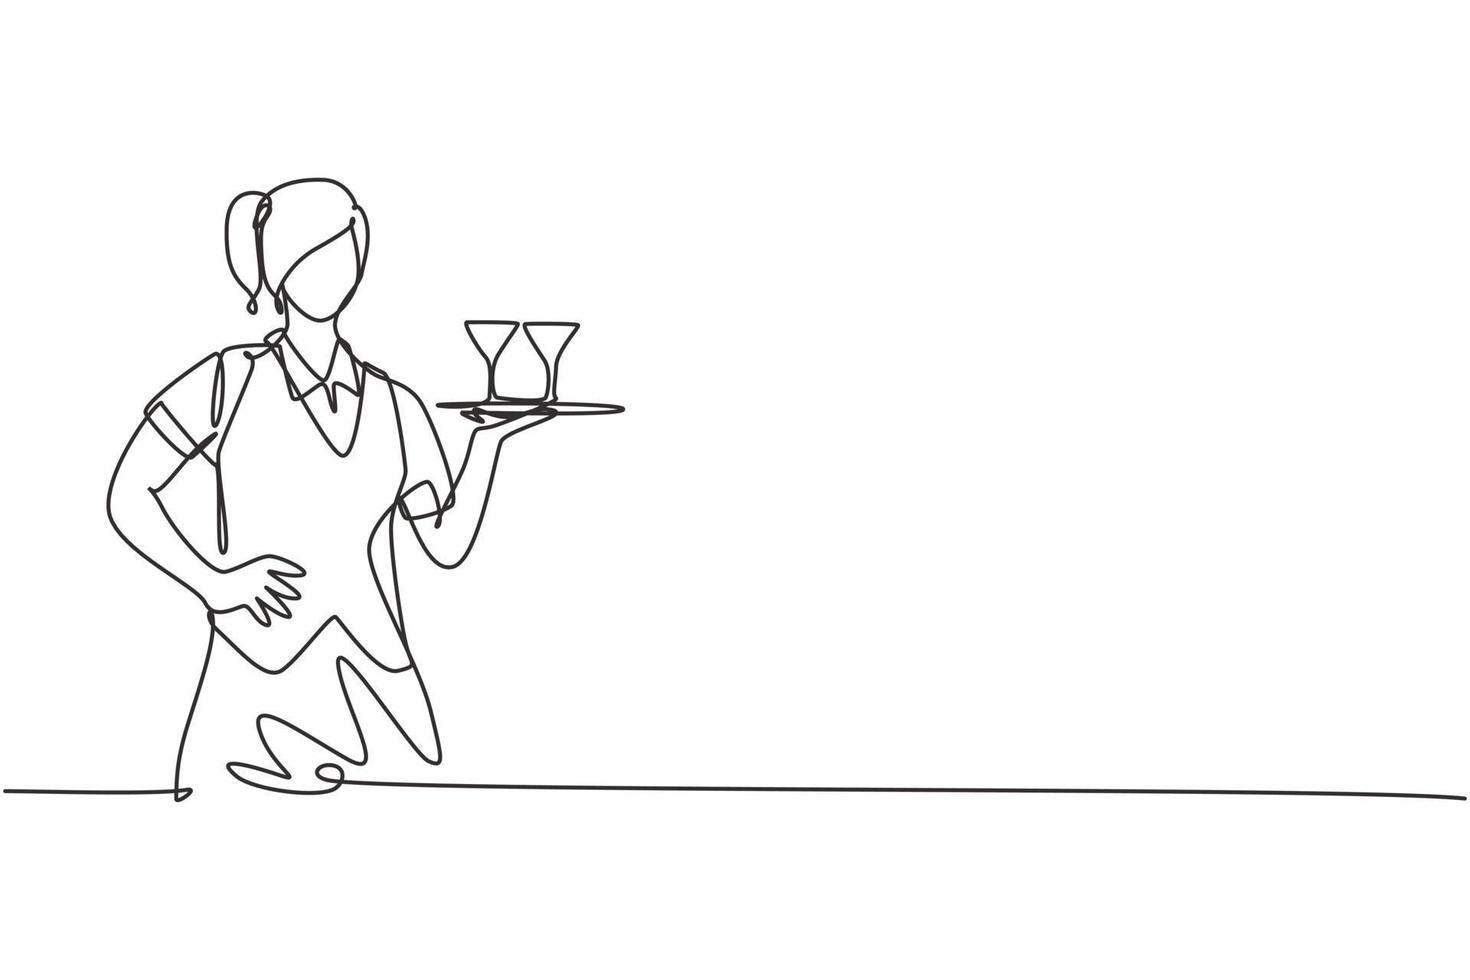 disegno continuo a una linea di una giovane cameriera femminile che porta il bicchiere sul vassoio con le mani sui fianchi. concetto minimalista di professione di lavoro professionale. illustrazione grafica vettoriale di disegno di disegno a linea singola